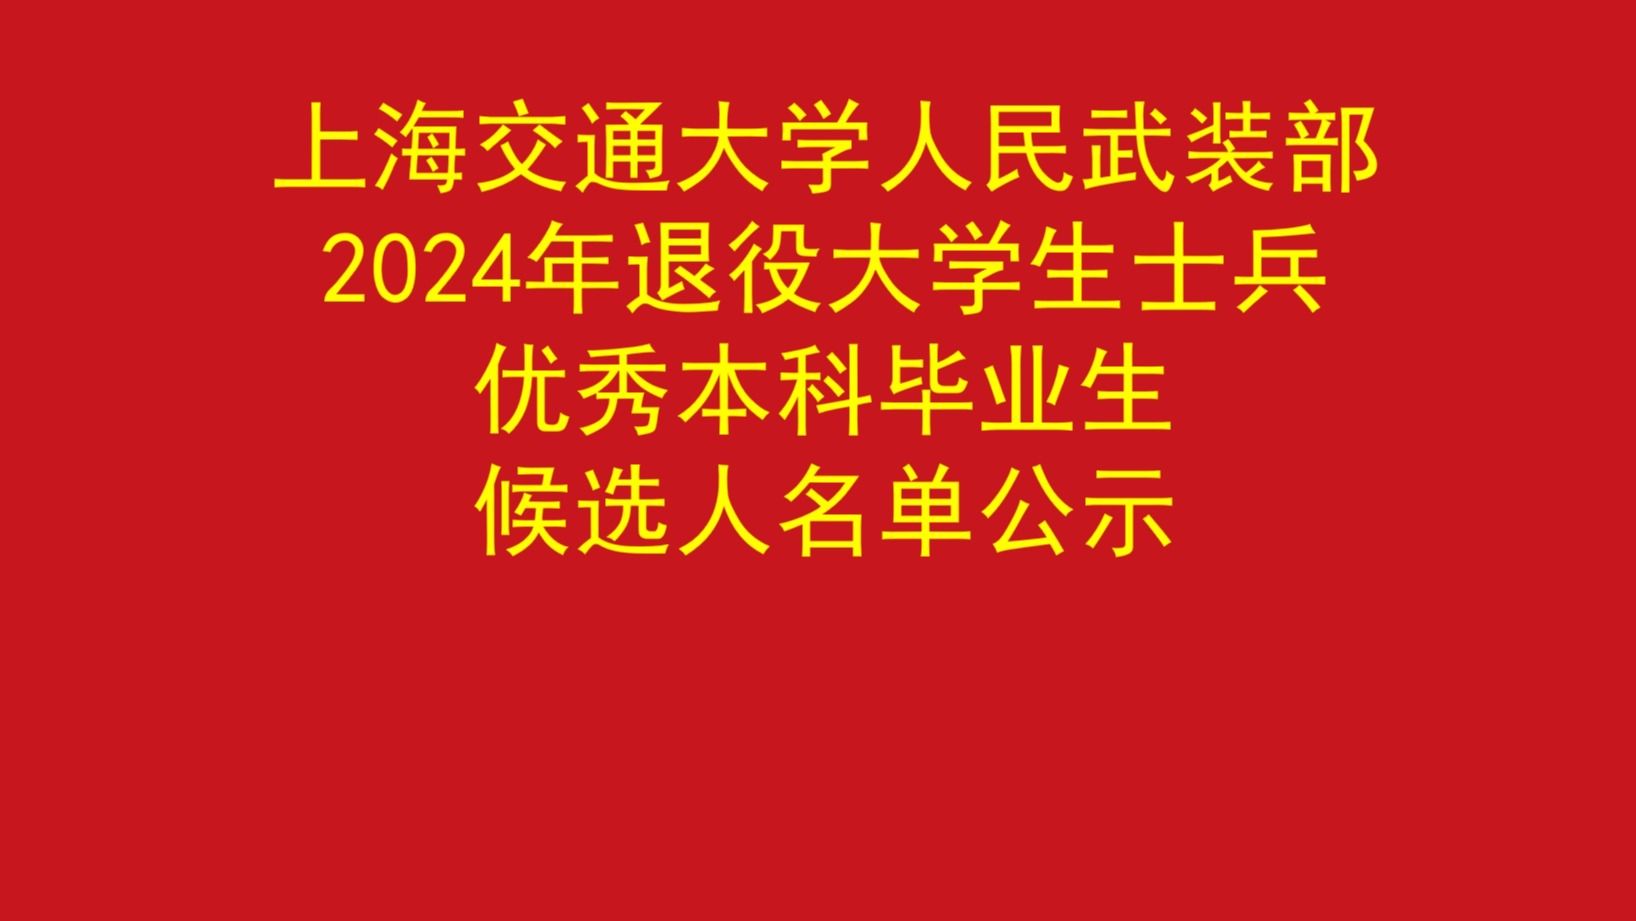 上海交通大学人民武装部2024年退役大学生士兵优秀本科毕业生候选人名单公示